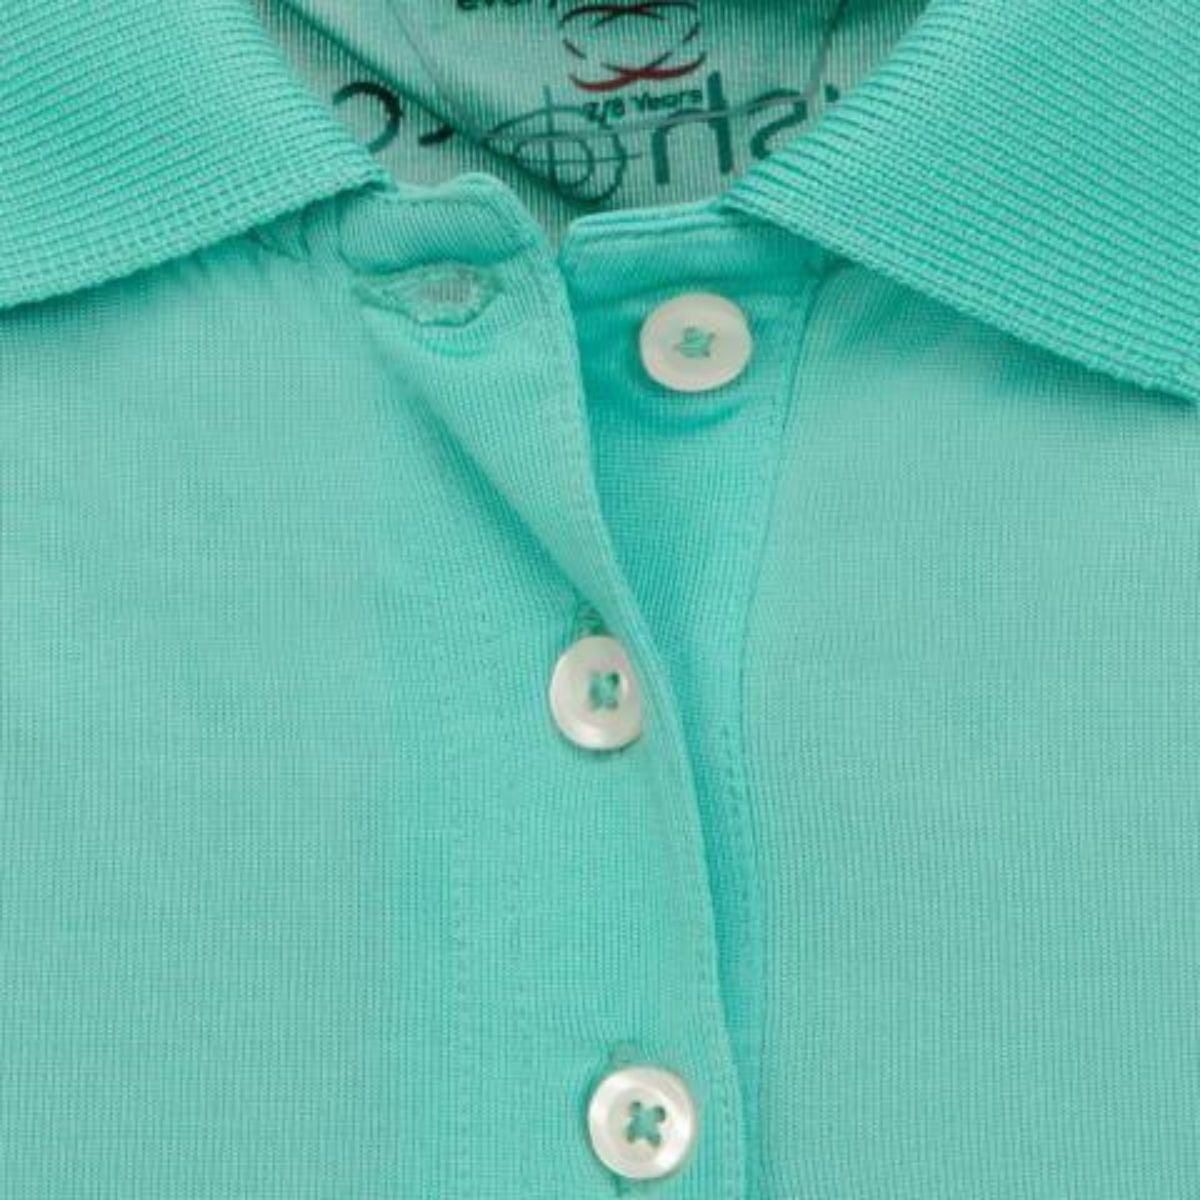 Girls' Golf Polo Shirt - Mint